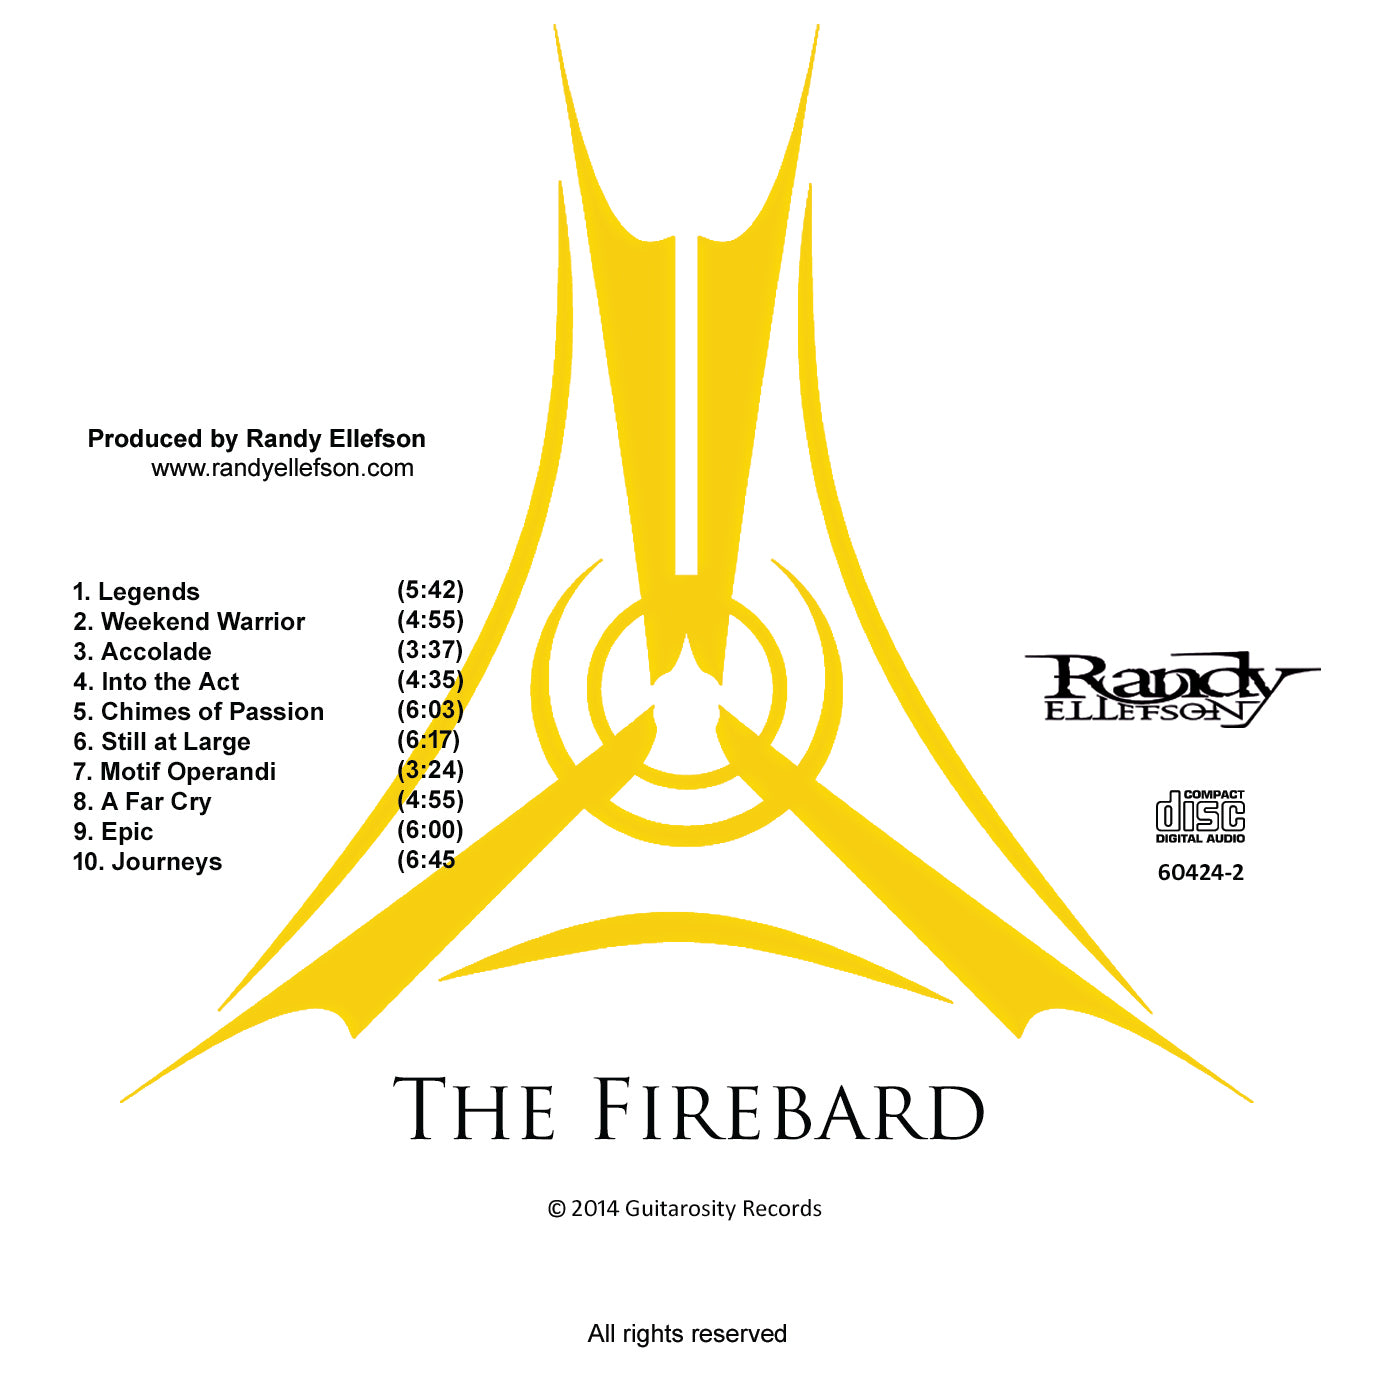 The Firebard, by Randy Ellefson